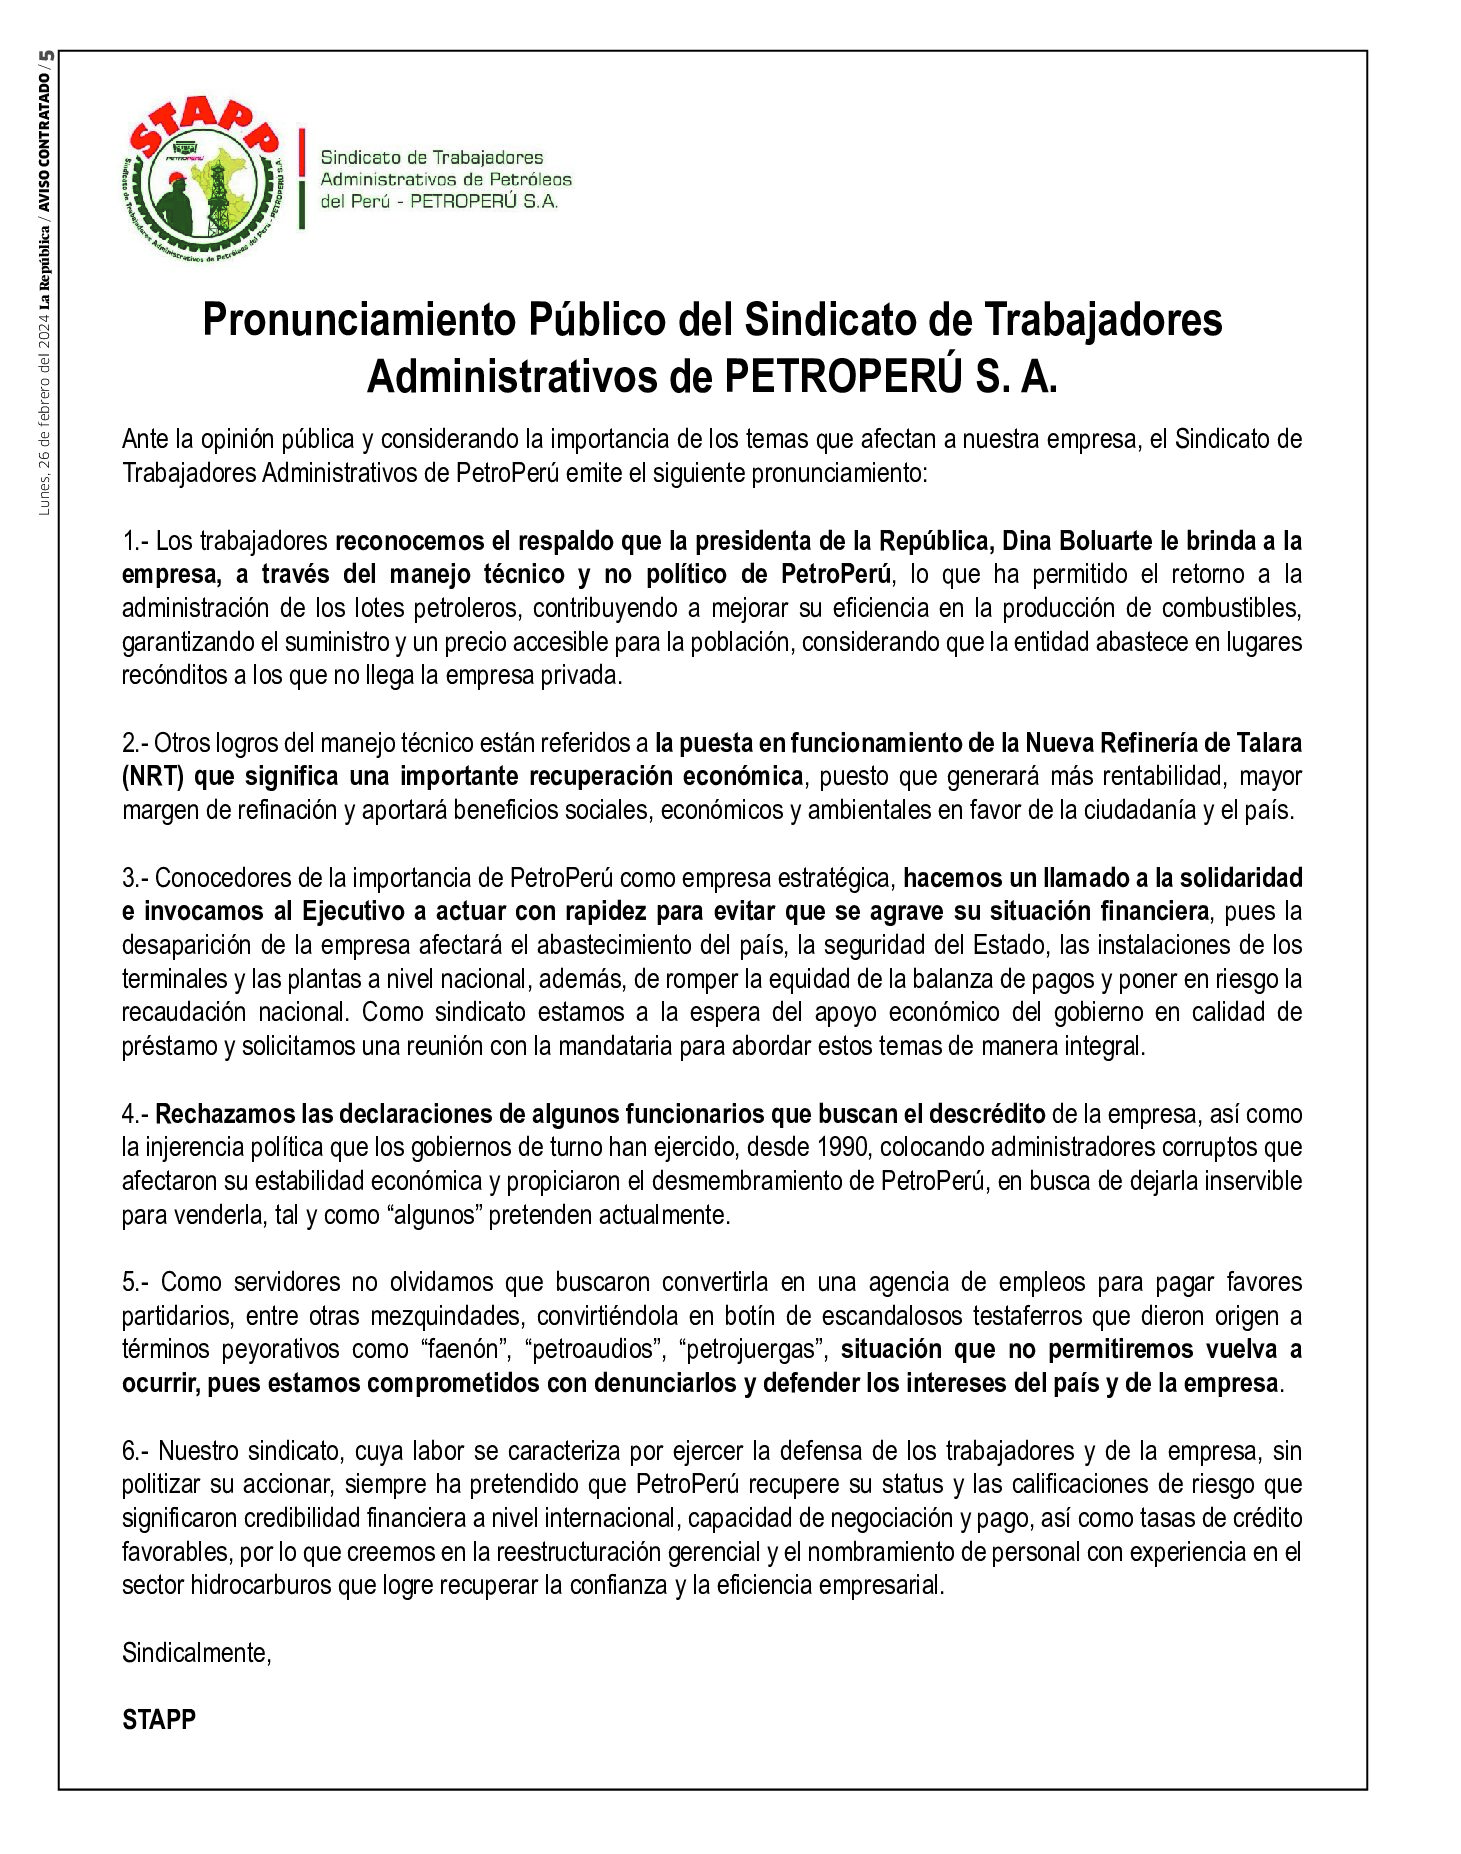 Pronunciamiento Público del Sindicato de Trabajadores Administrativos de PETROPERÚ S. A. (STAPP)